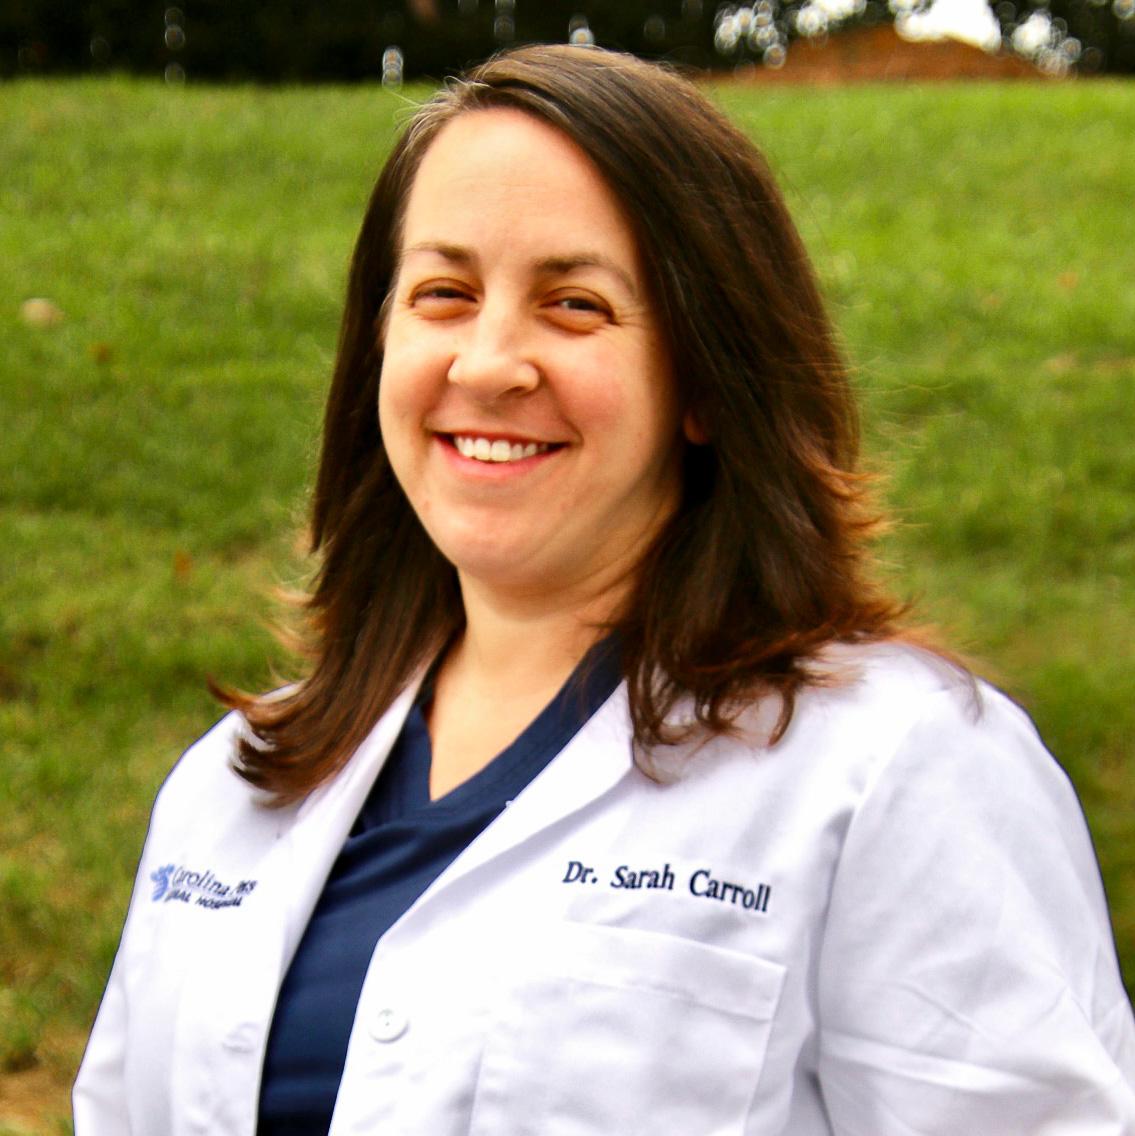 Dr. Sarah Carroll